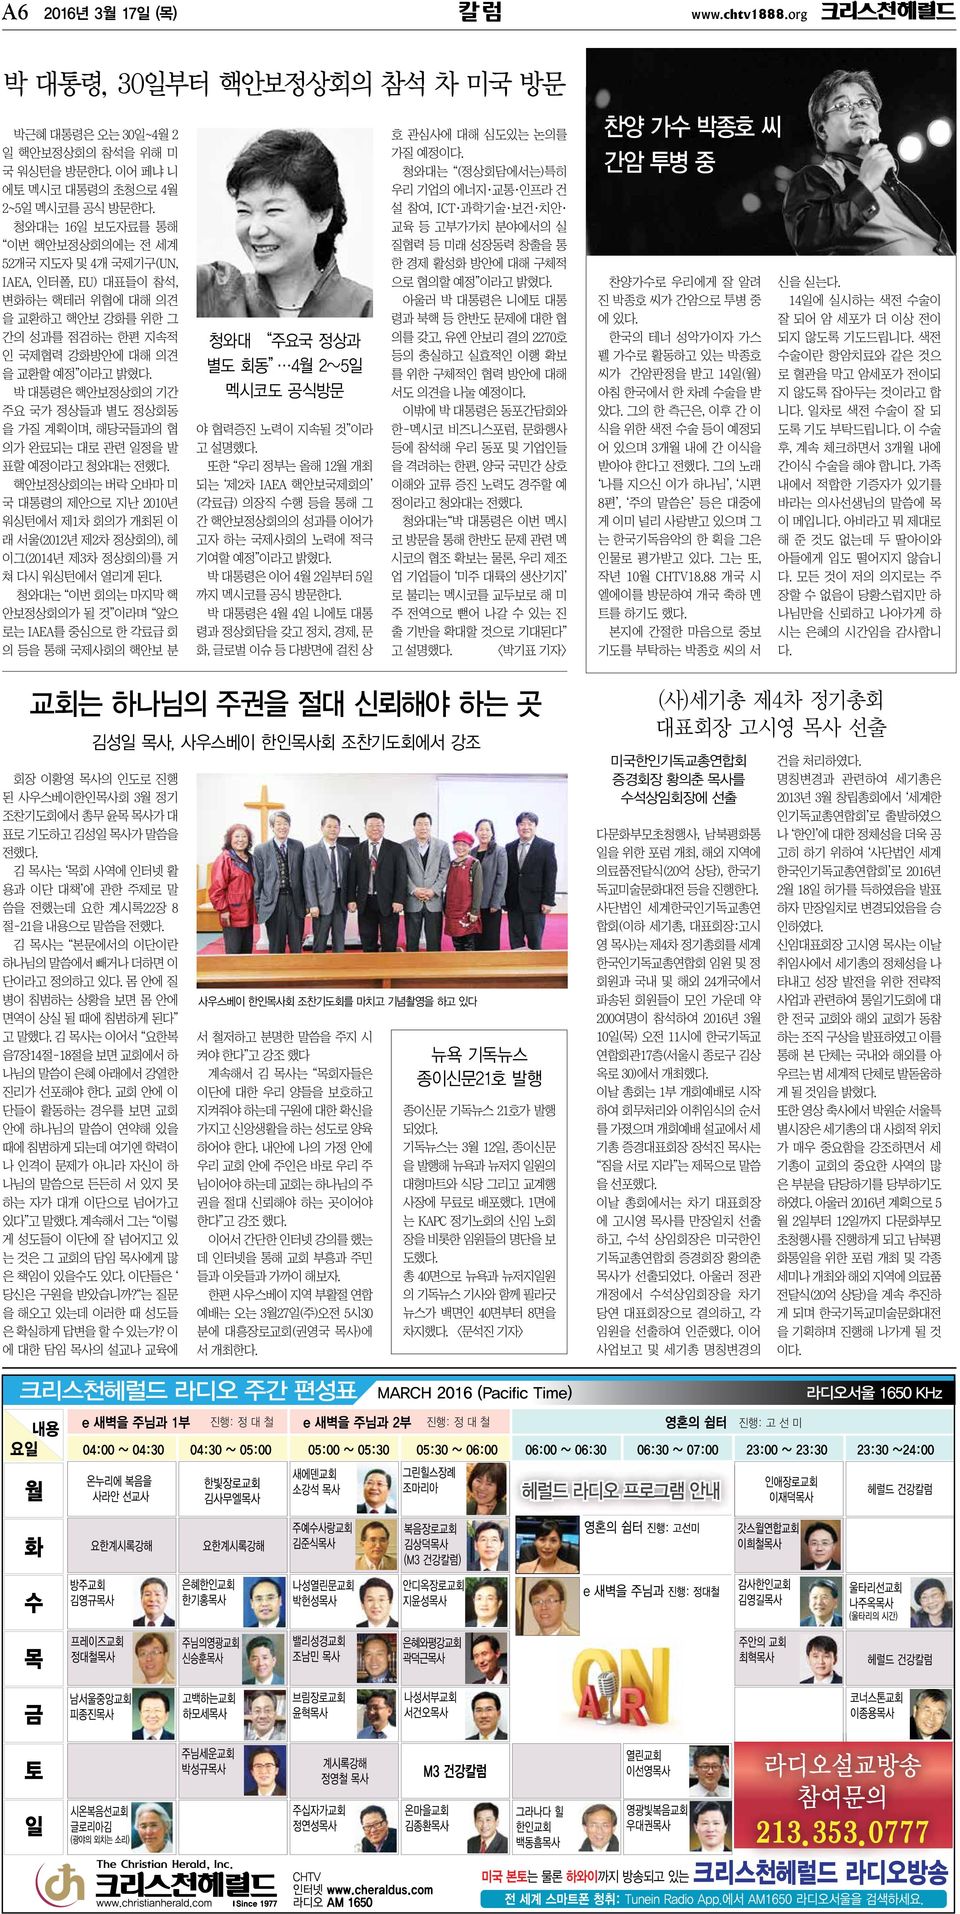 박 대통령은 핵안보정상회의 기간 주요 국가 정상들과 별도 정상회동 을 가질 계획이며, 해당국들과의 협 의가 완료되는 대로 관련 일정을 발 표할 예정이라고 청와대는 전했다.